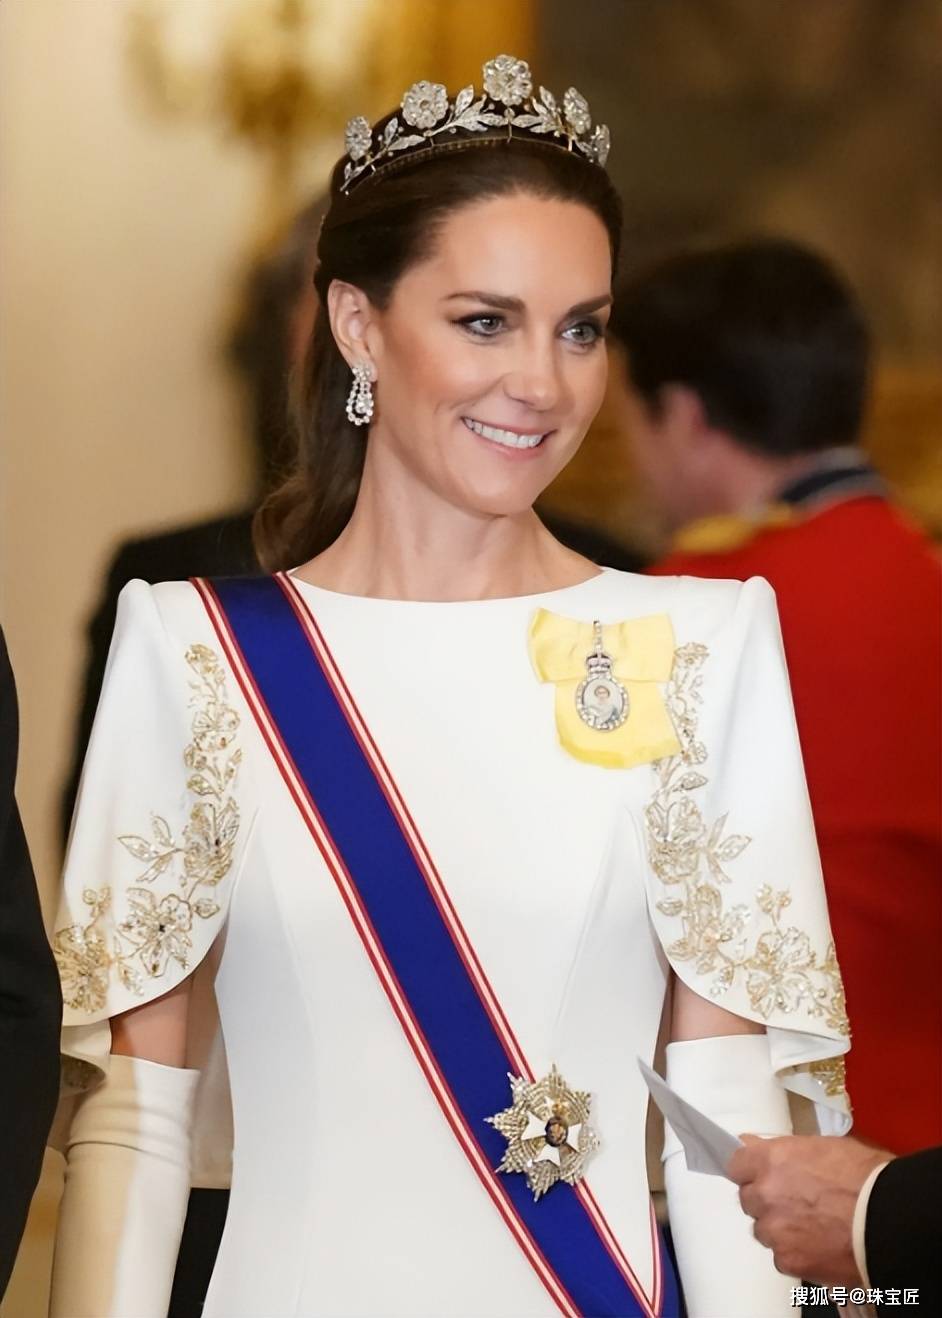 在国宴上,凯特王妃身穿一件带有金色细节的象牙色珍妮·帕克汉姆礼服